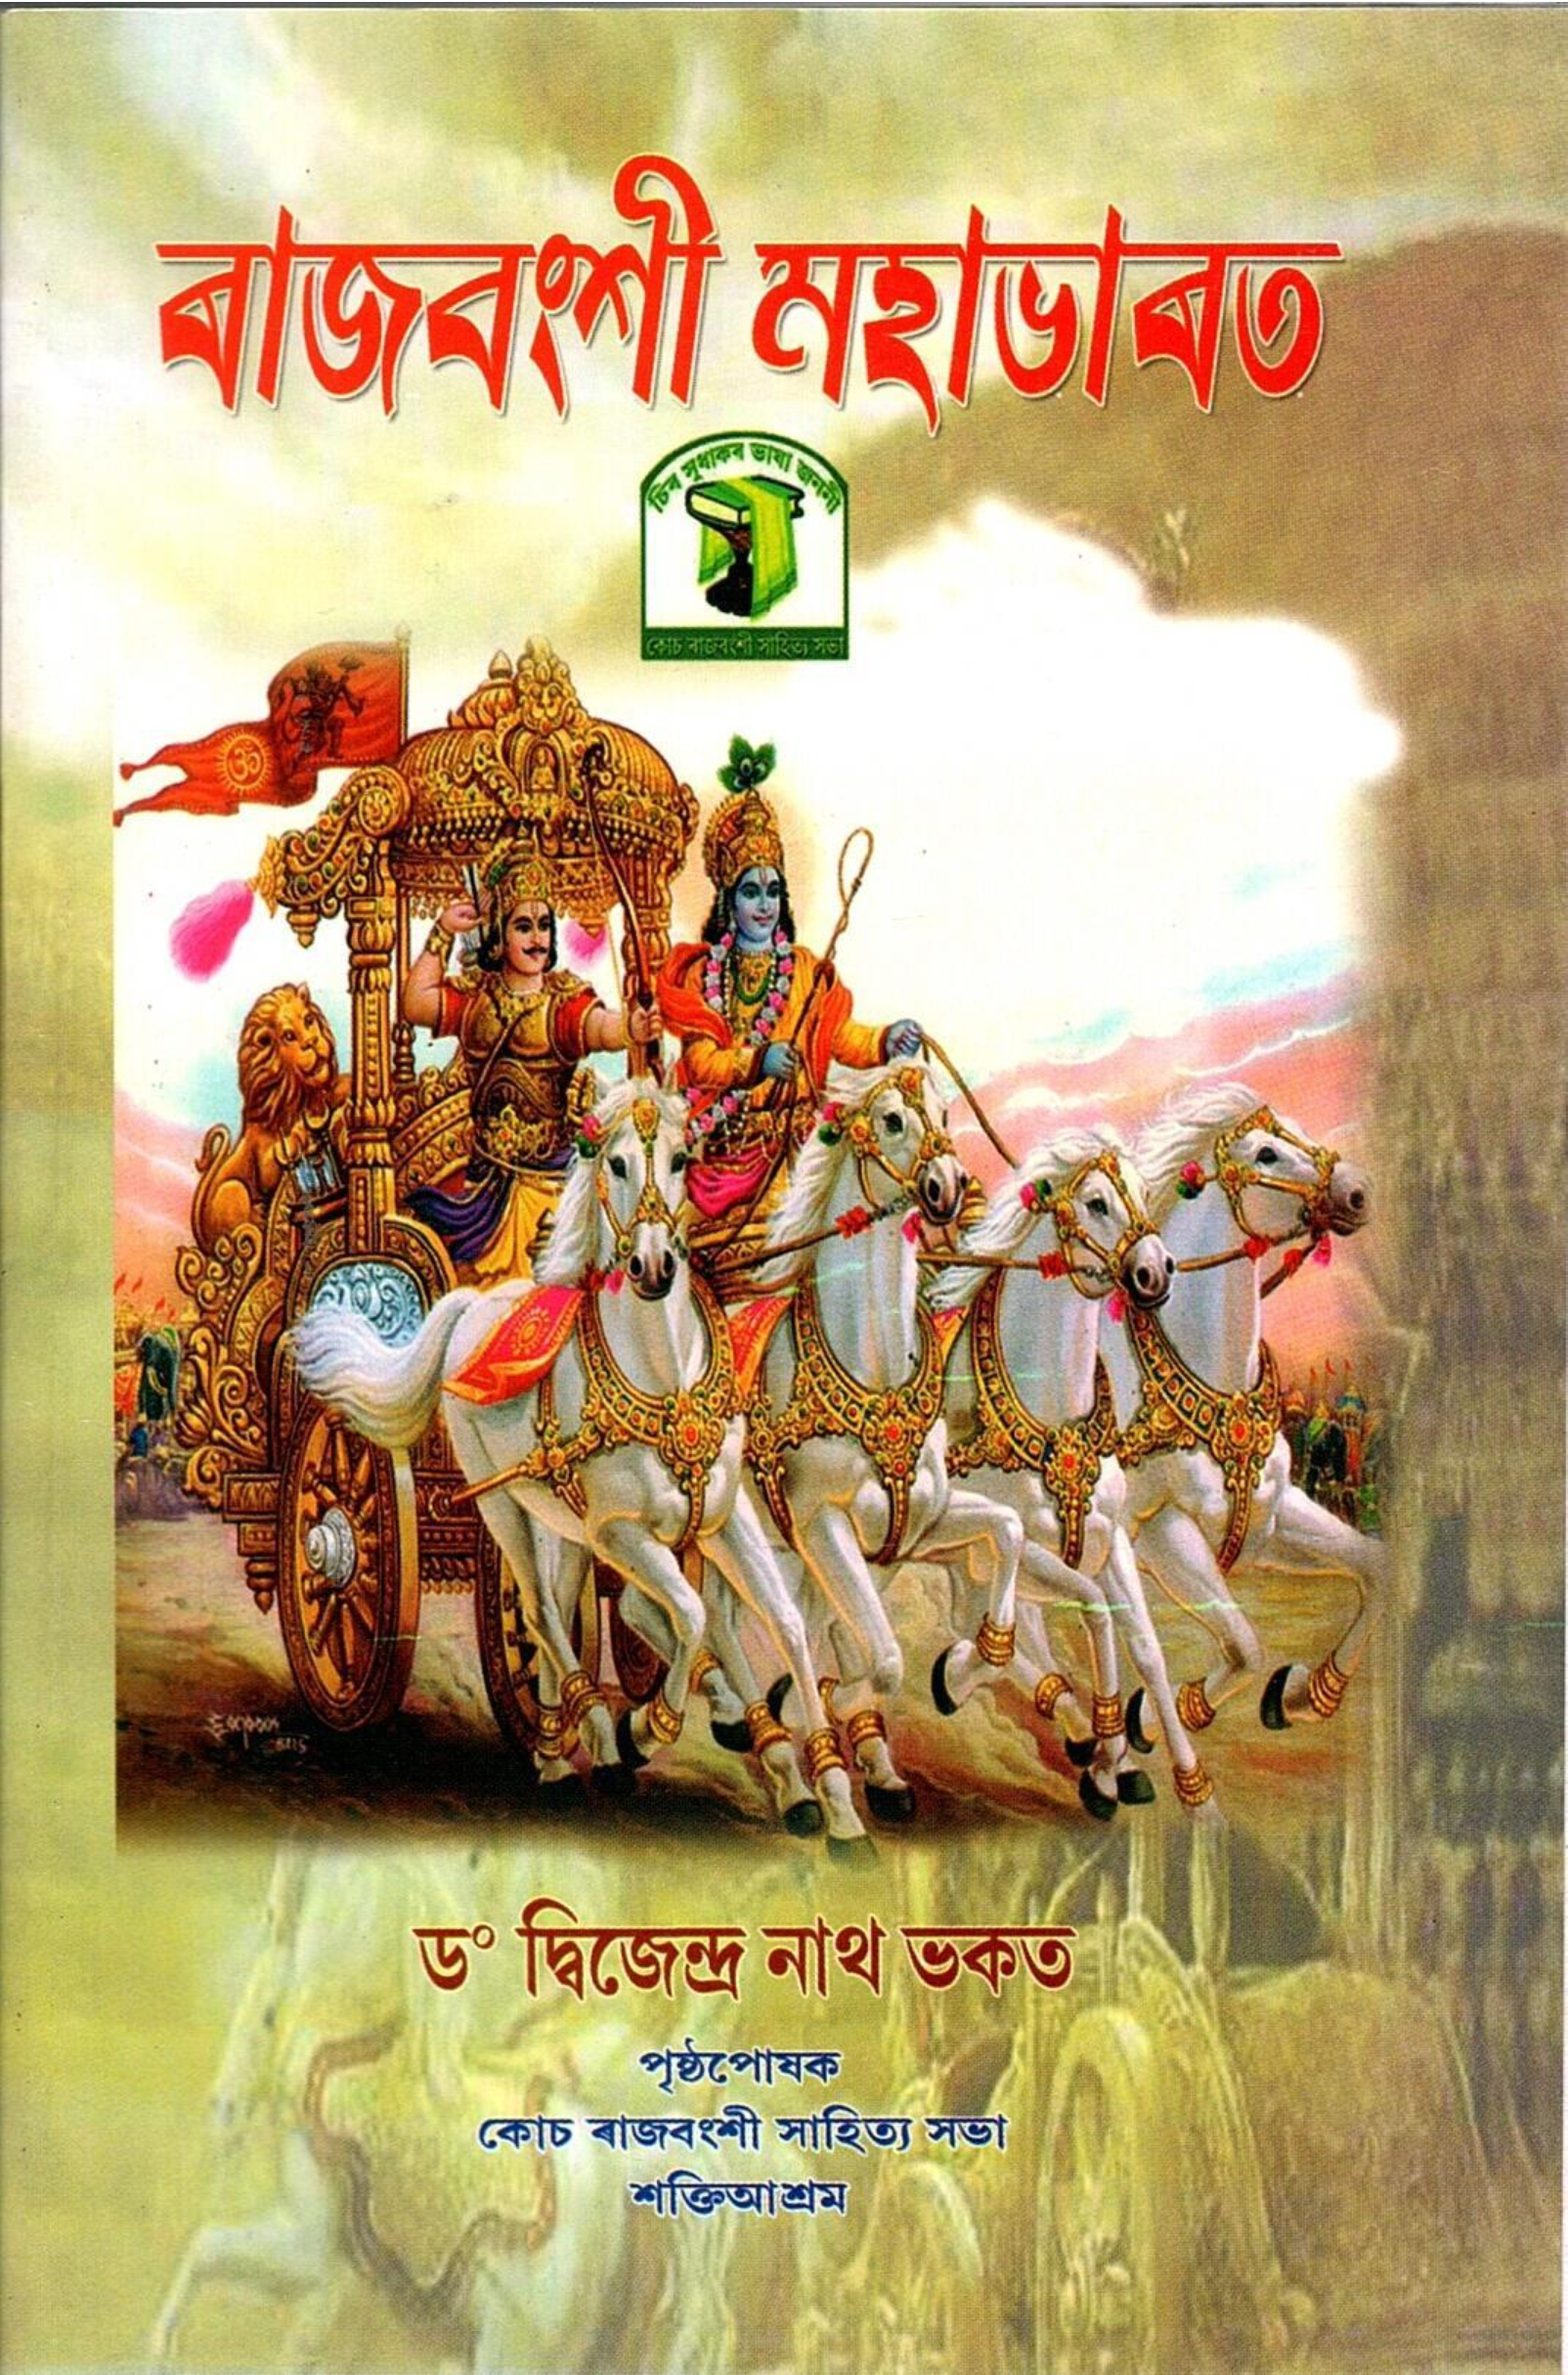 ৰাজবংশী মহাভাৰত | Rajbanshi Mahabharat